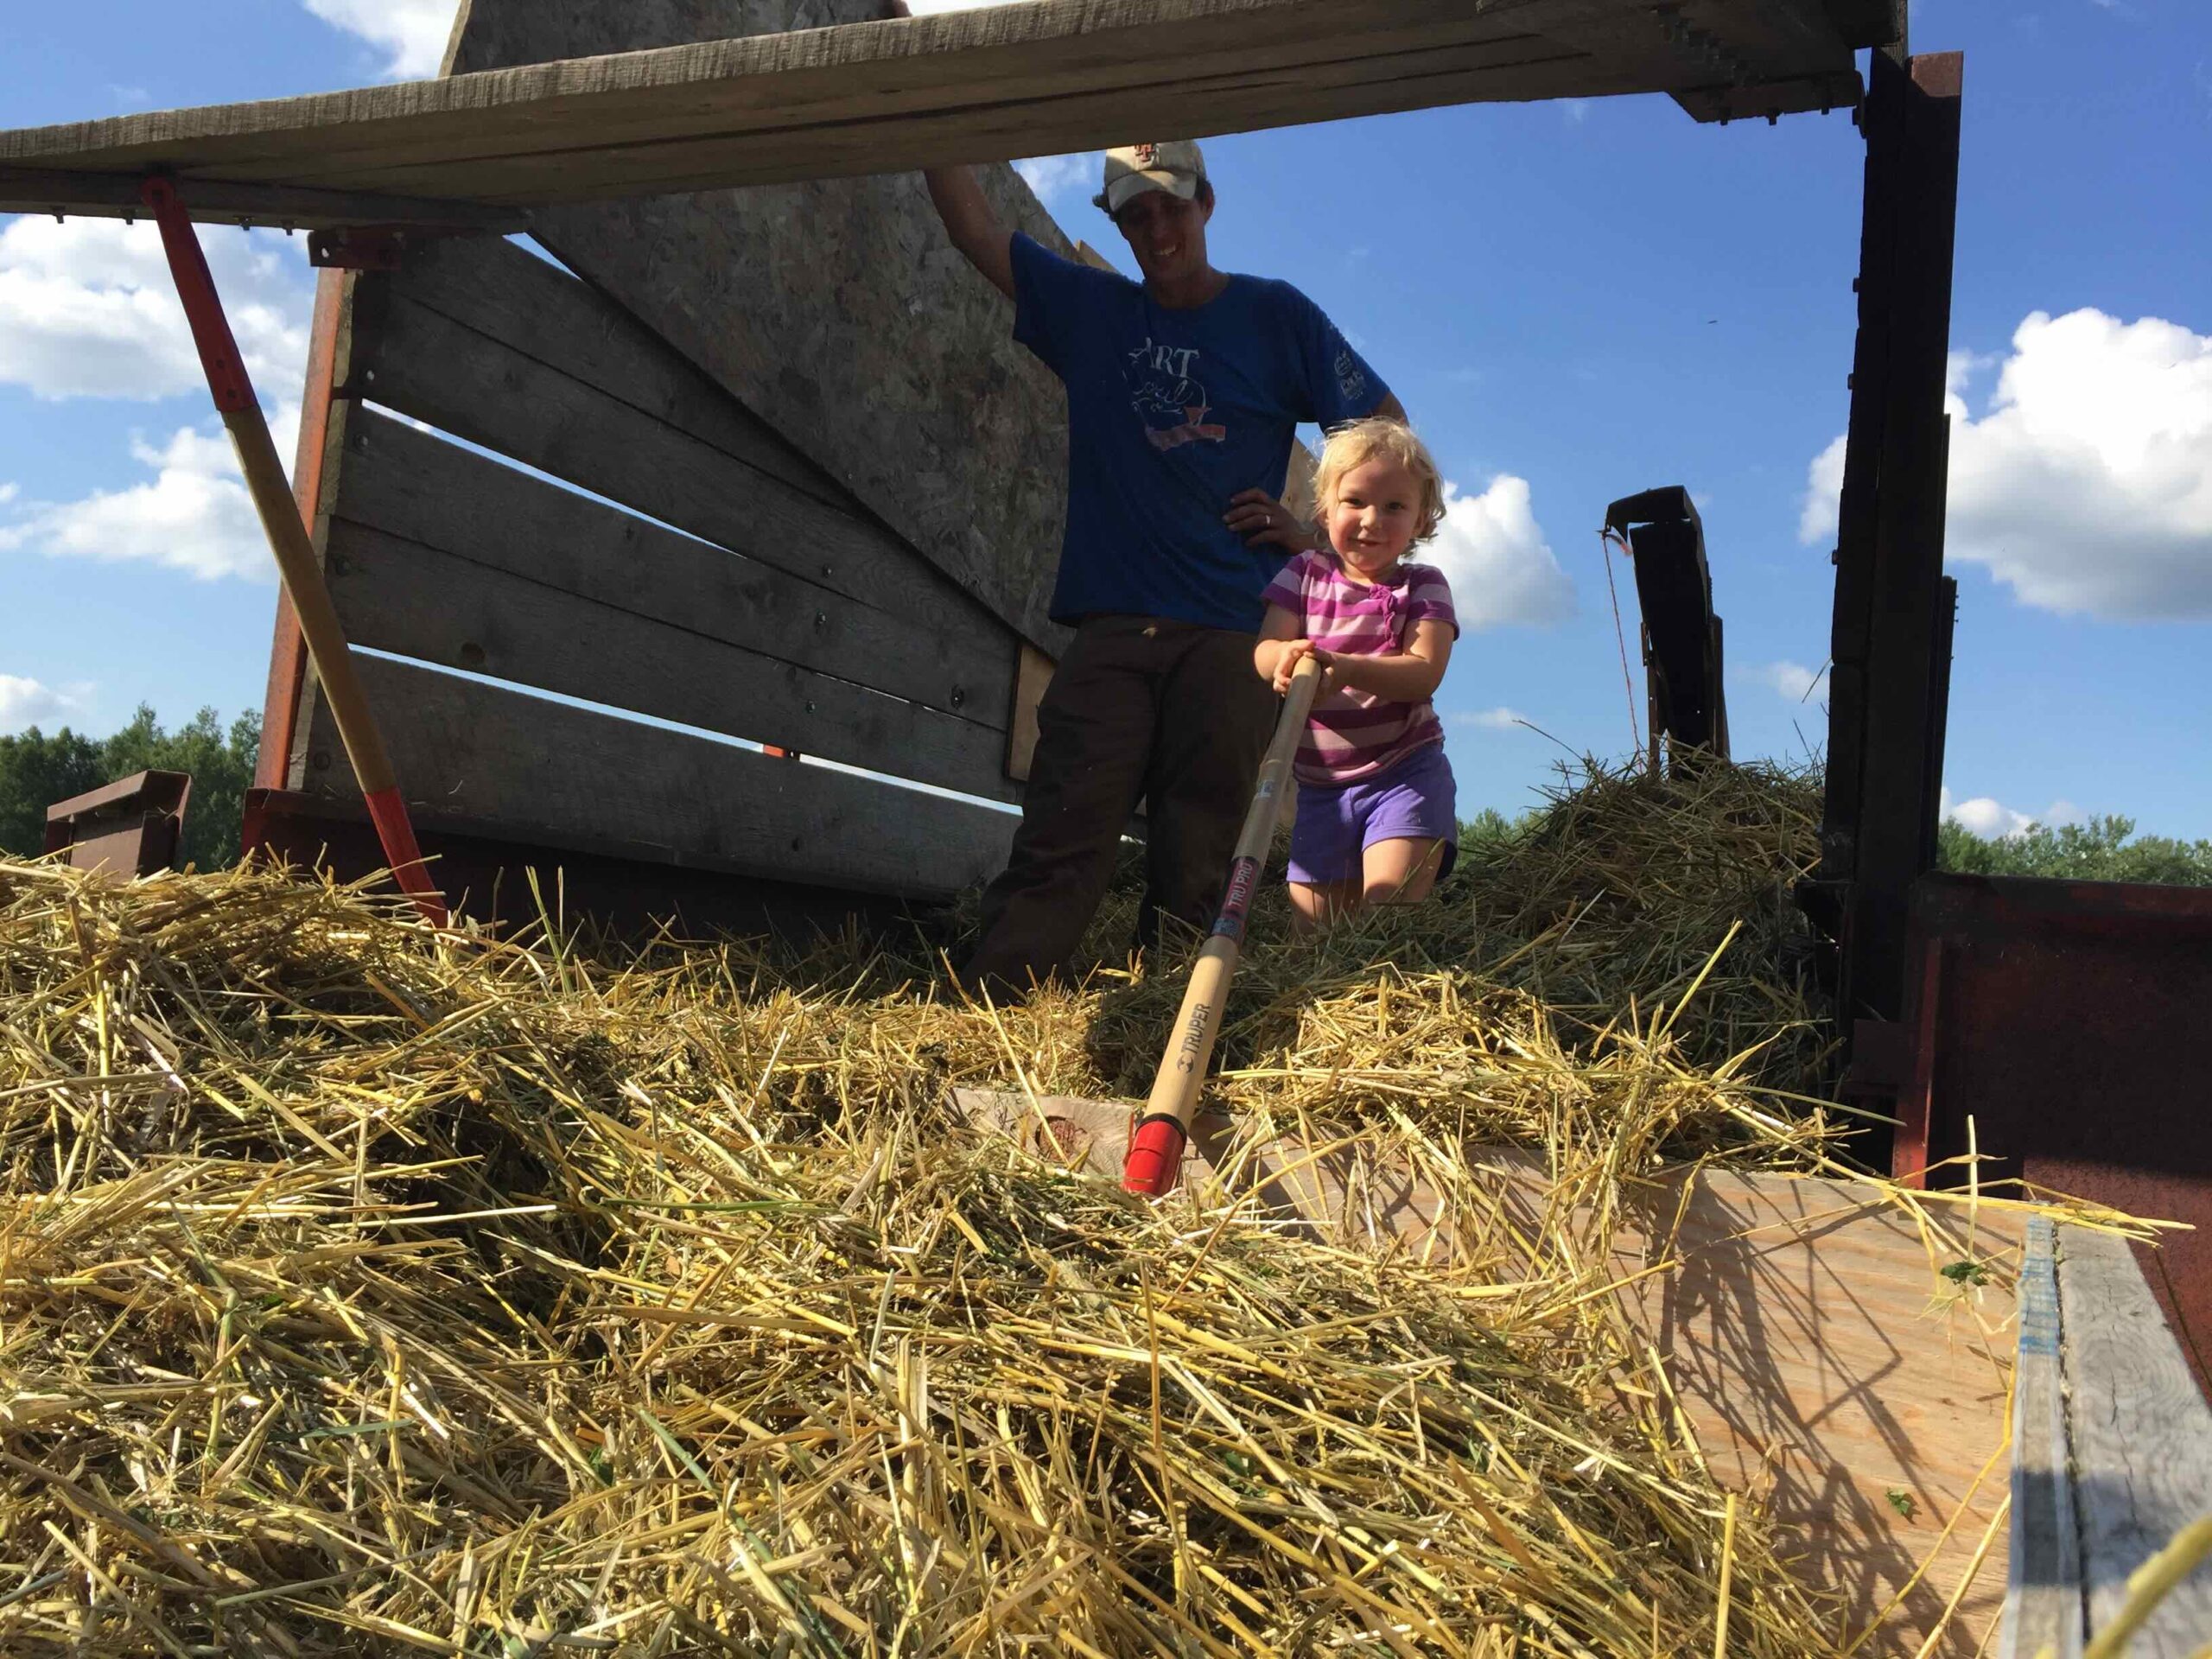 Adam Kemp and his daughter raking straw